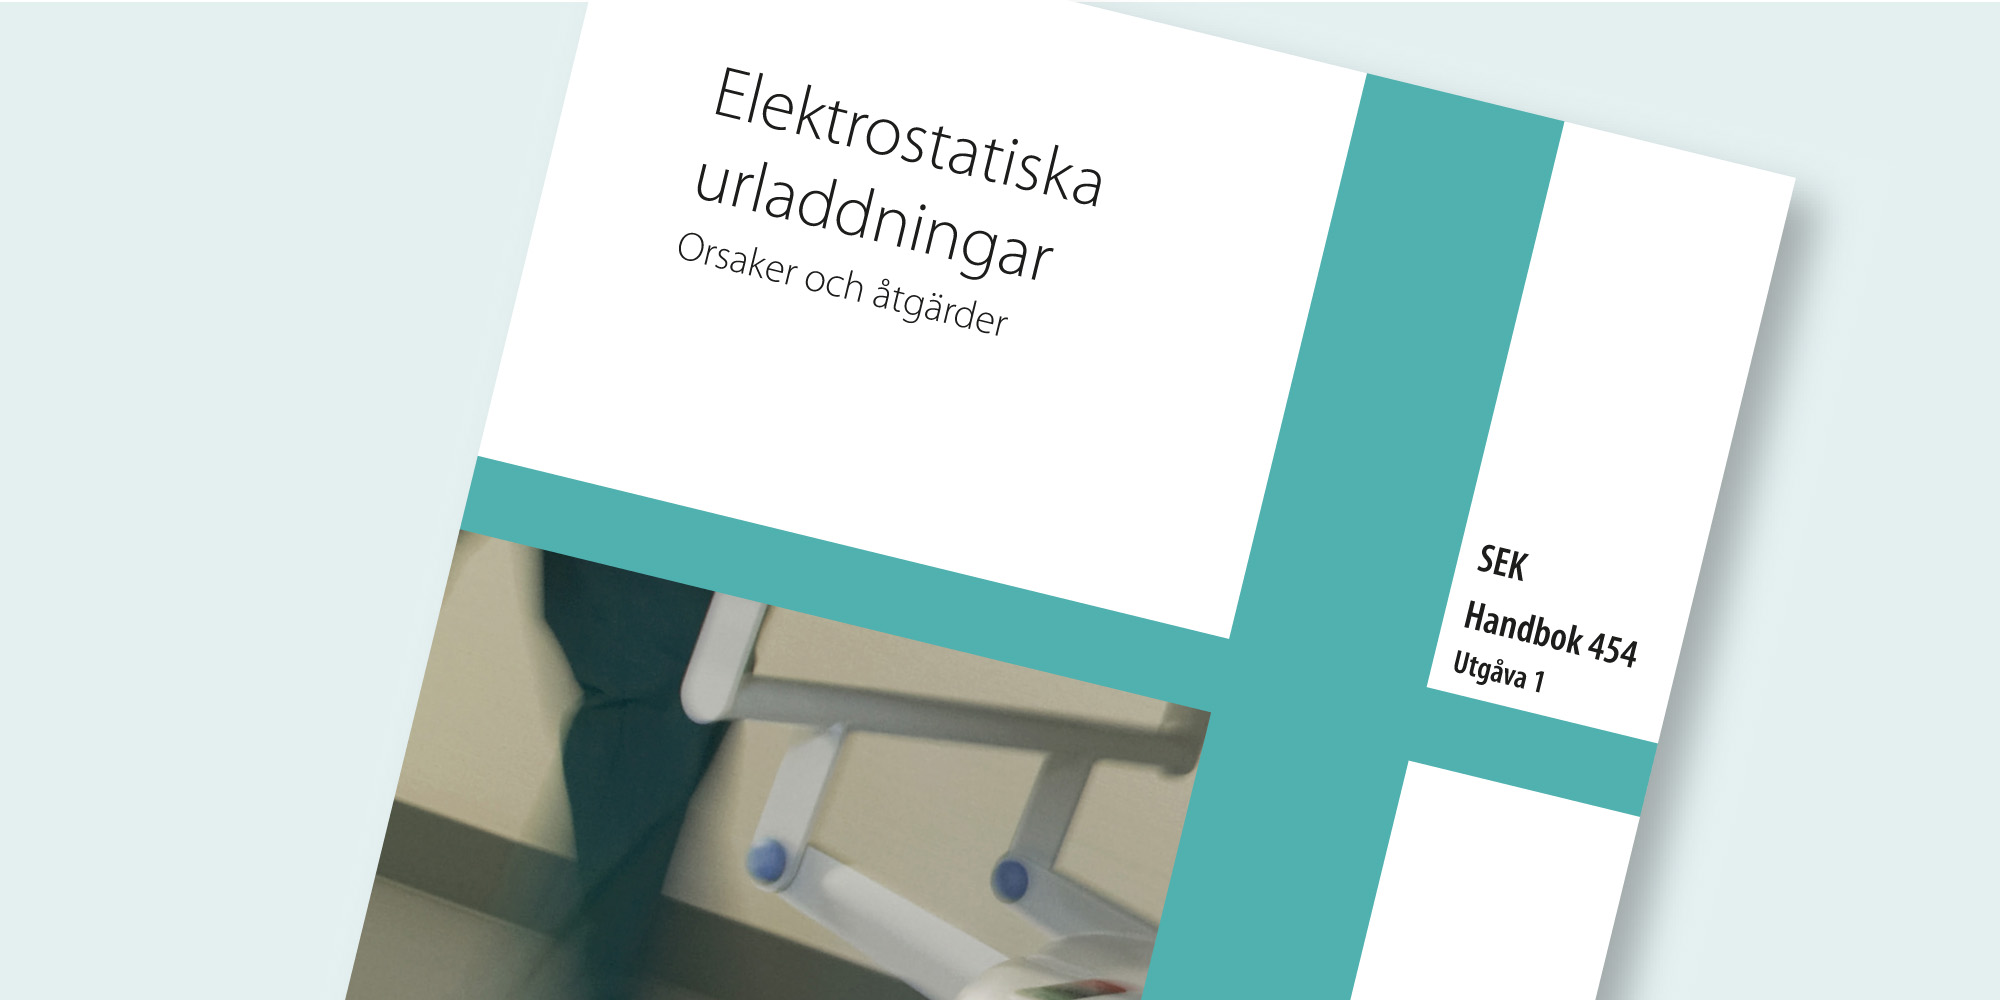 Elektrostatiska urladdningar, SEK Handbok 454